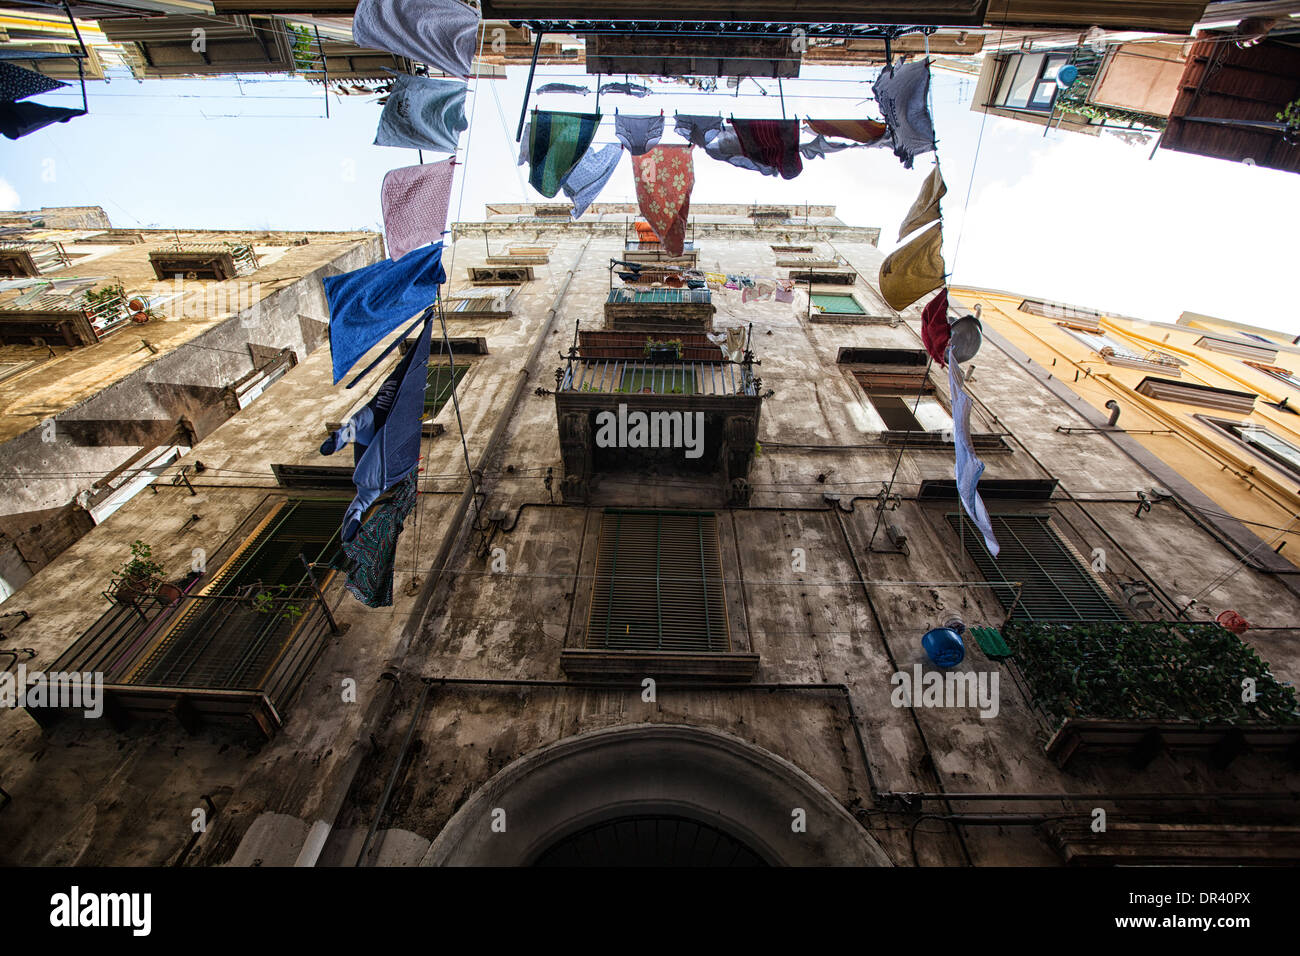 Kleidung aufgehängt Gassen von Neapel Stockfoto